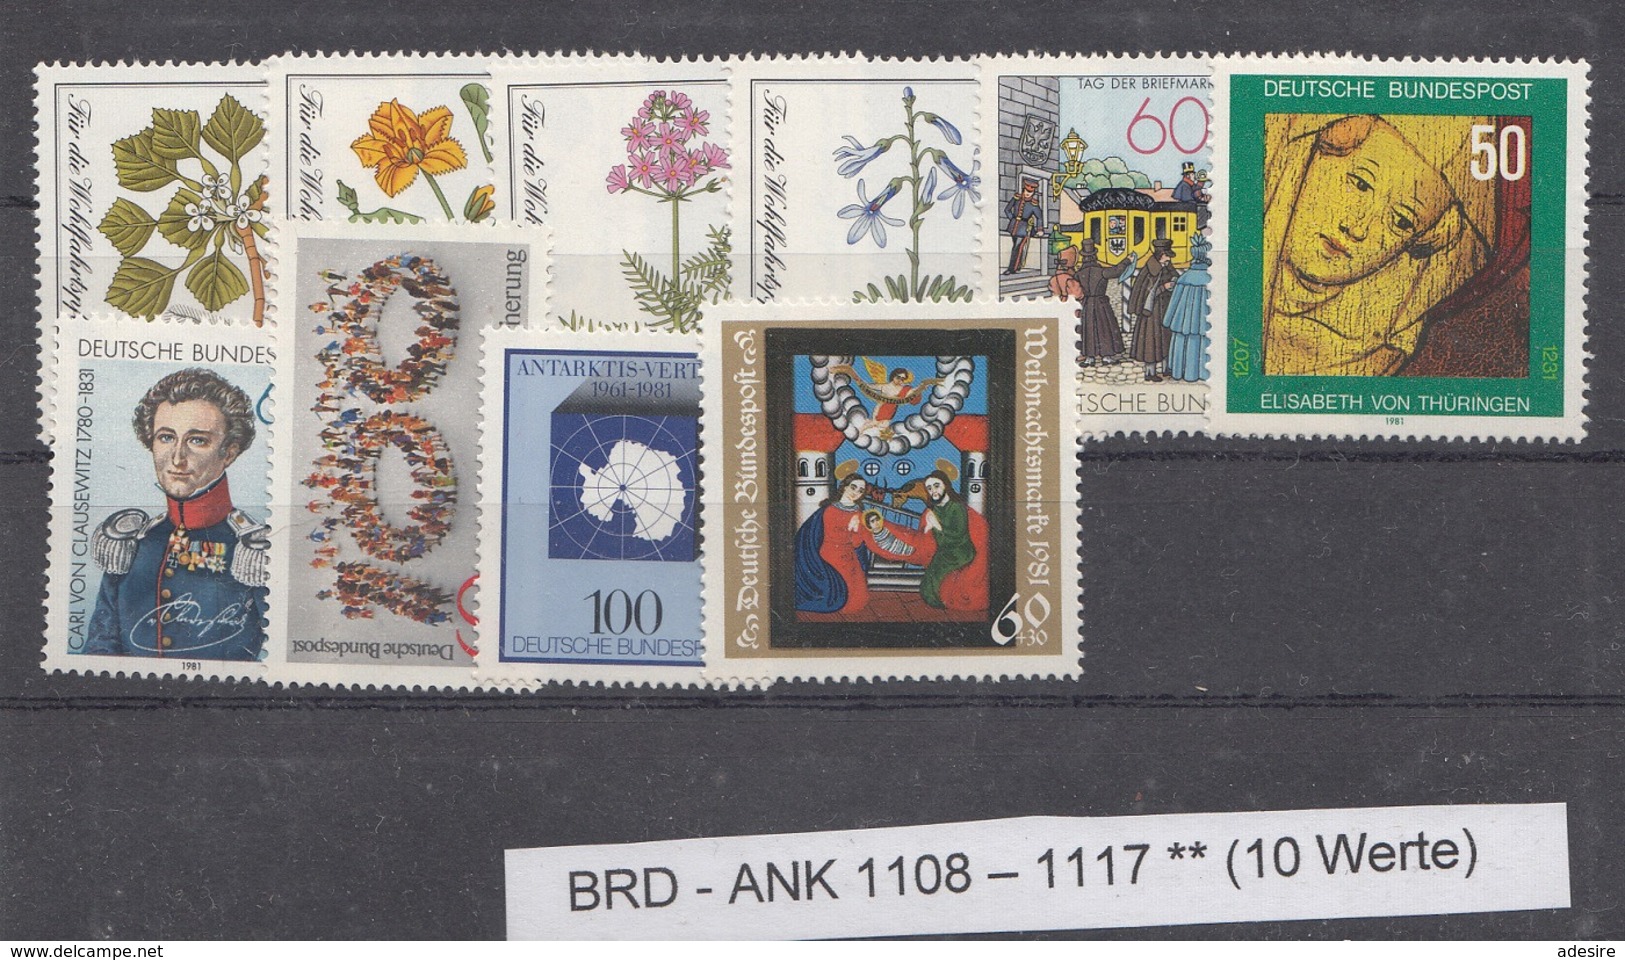 Lot Briefmarken BRD 1981 ** Ank1108 - 1117 (10 Werte) - Ungebraucht